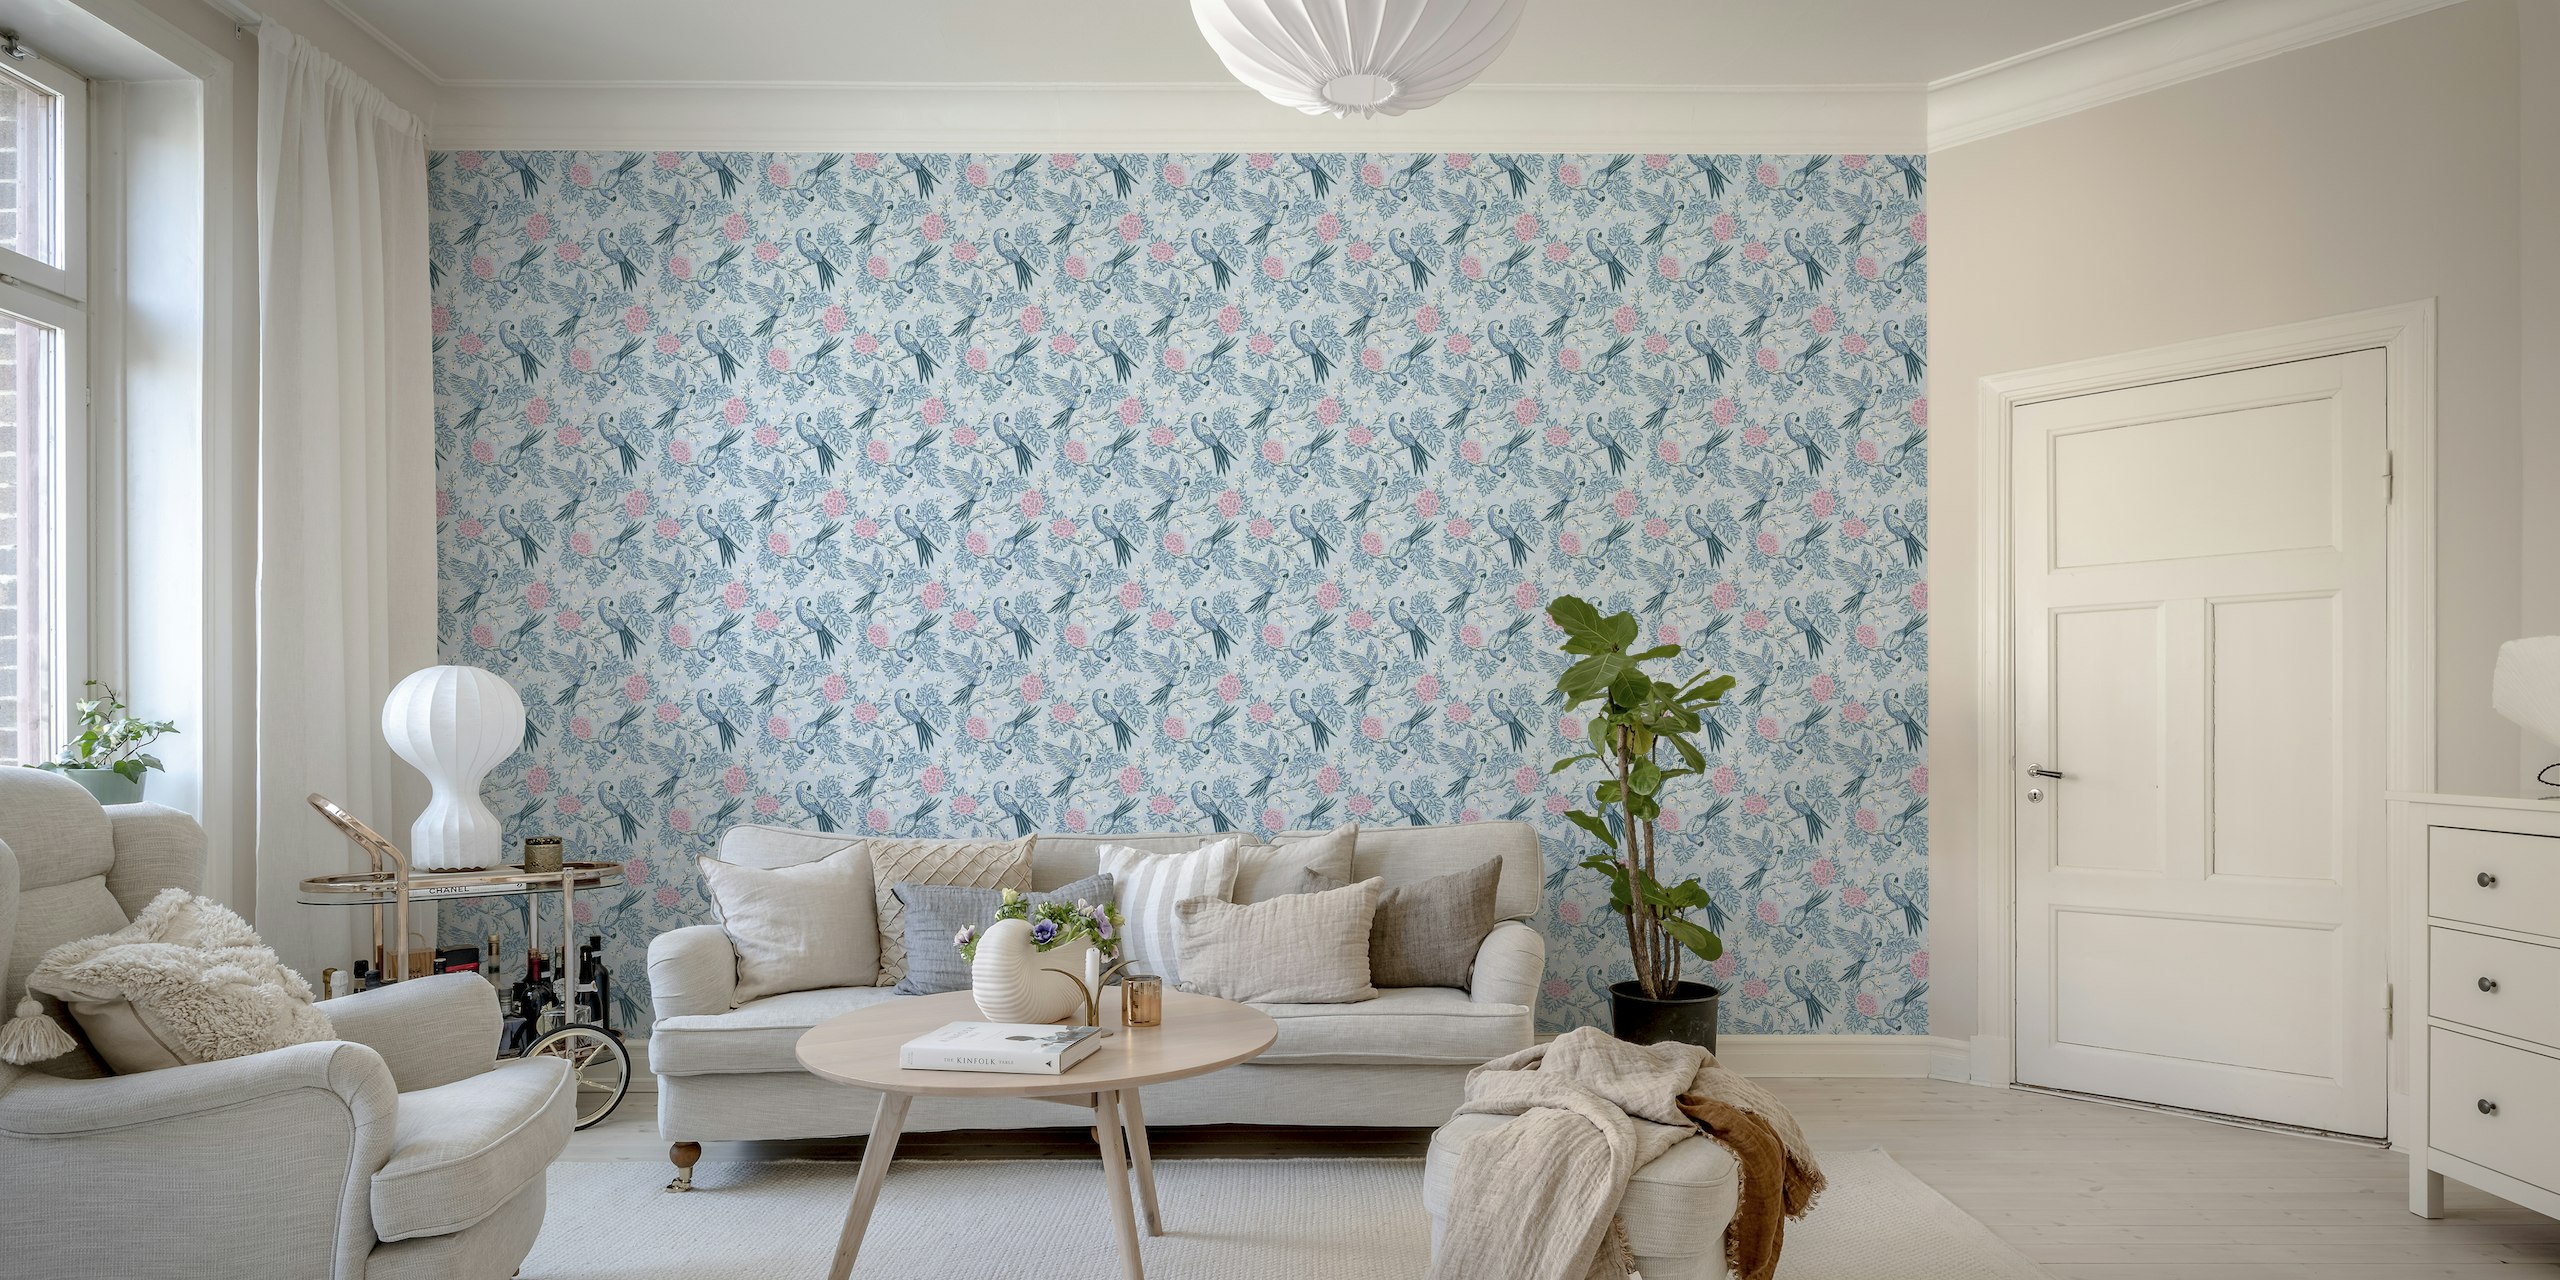 Parrot garden - blue and pink wallpaper